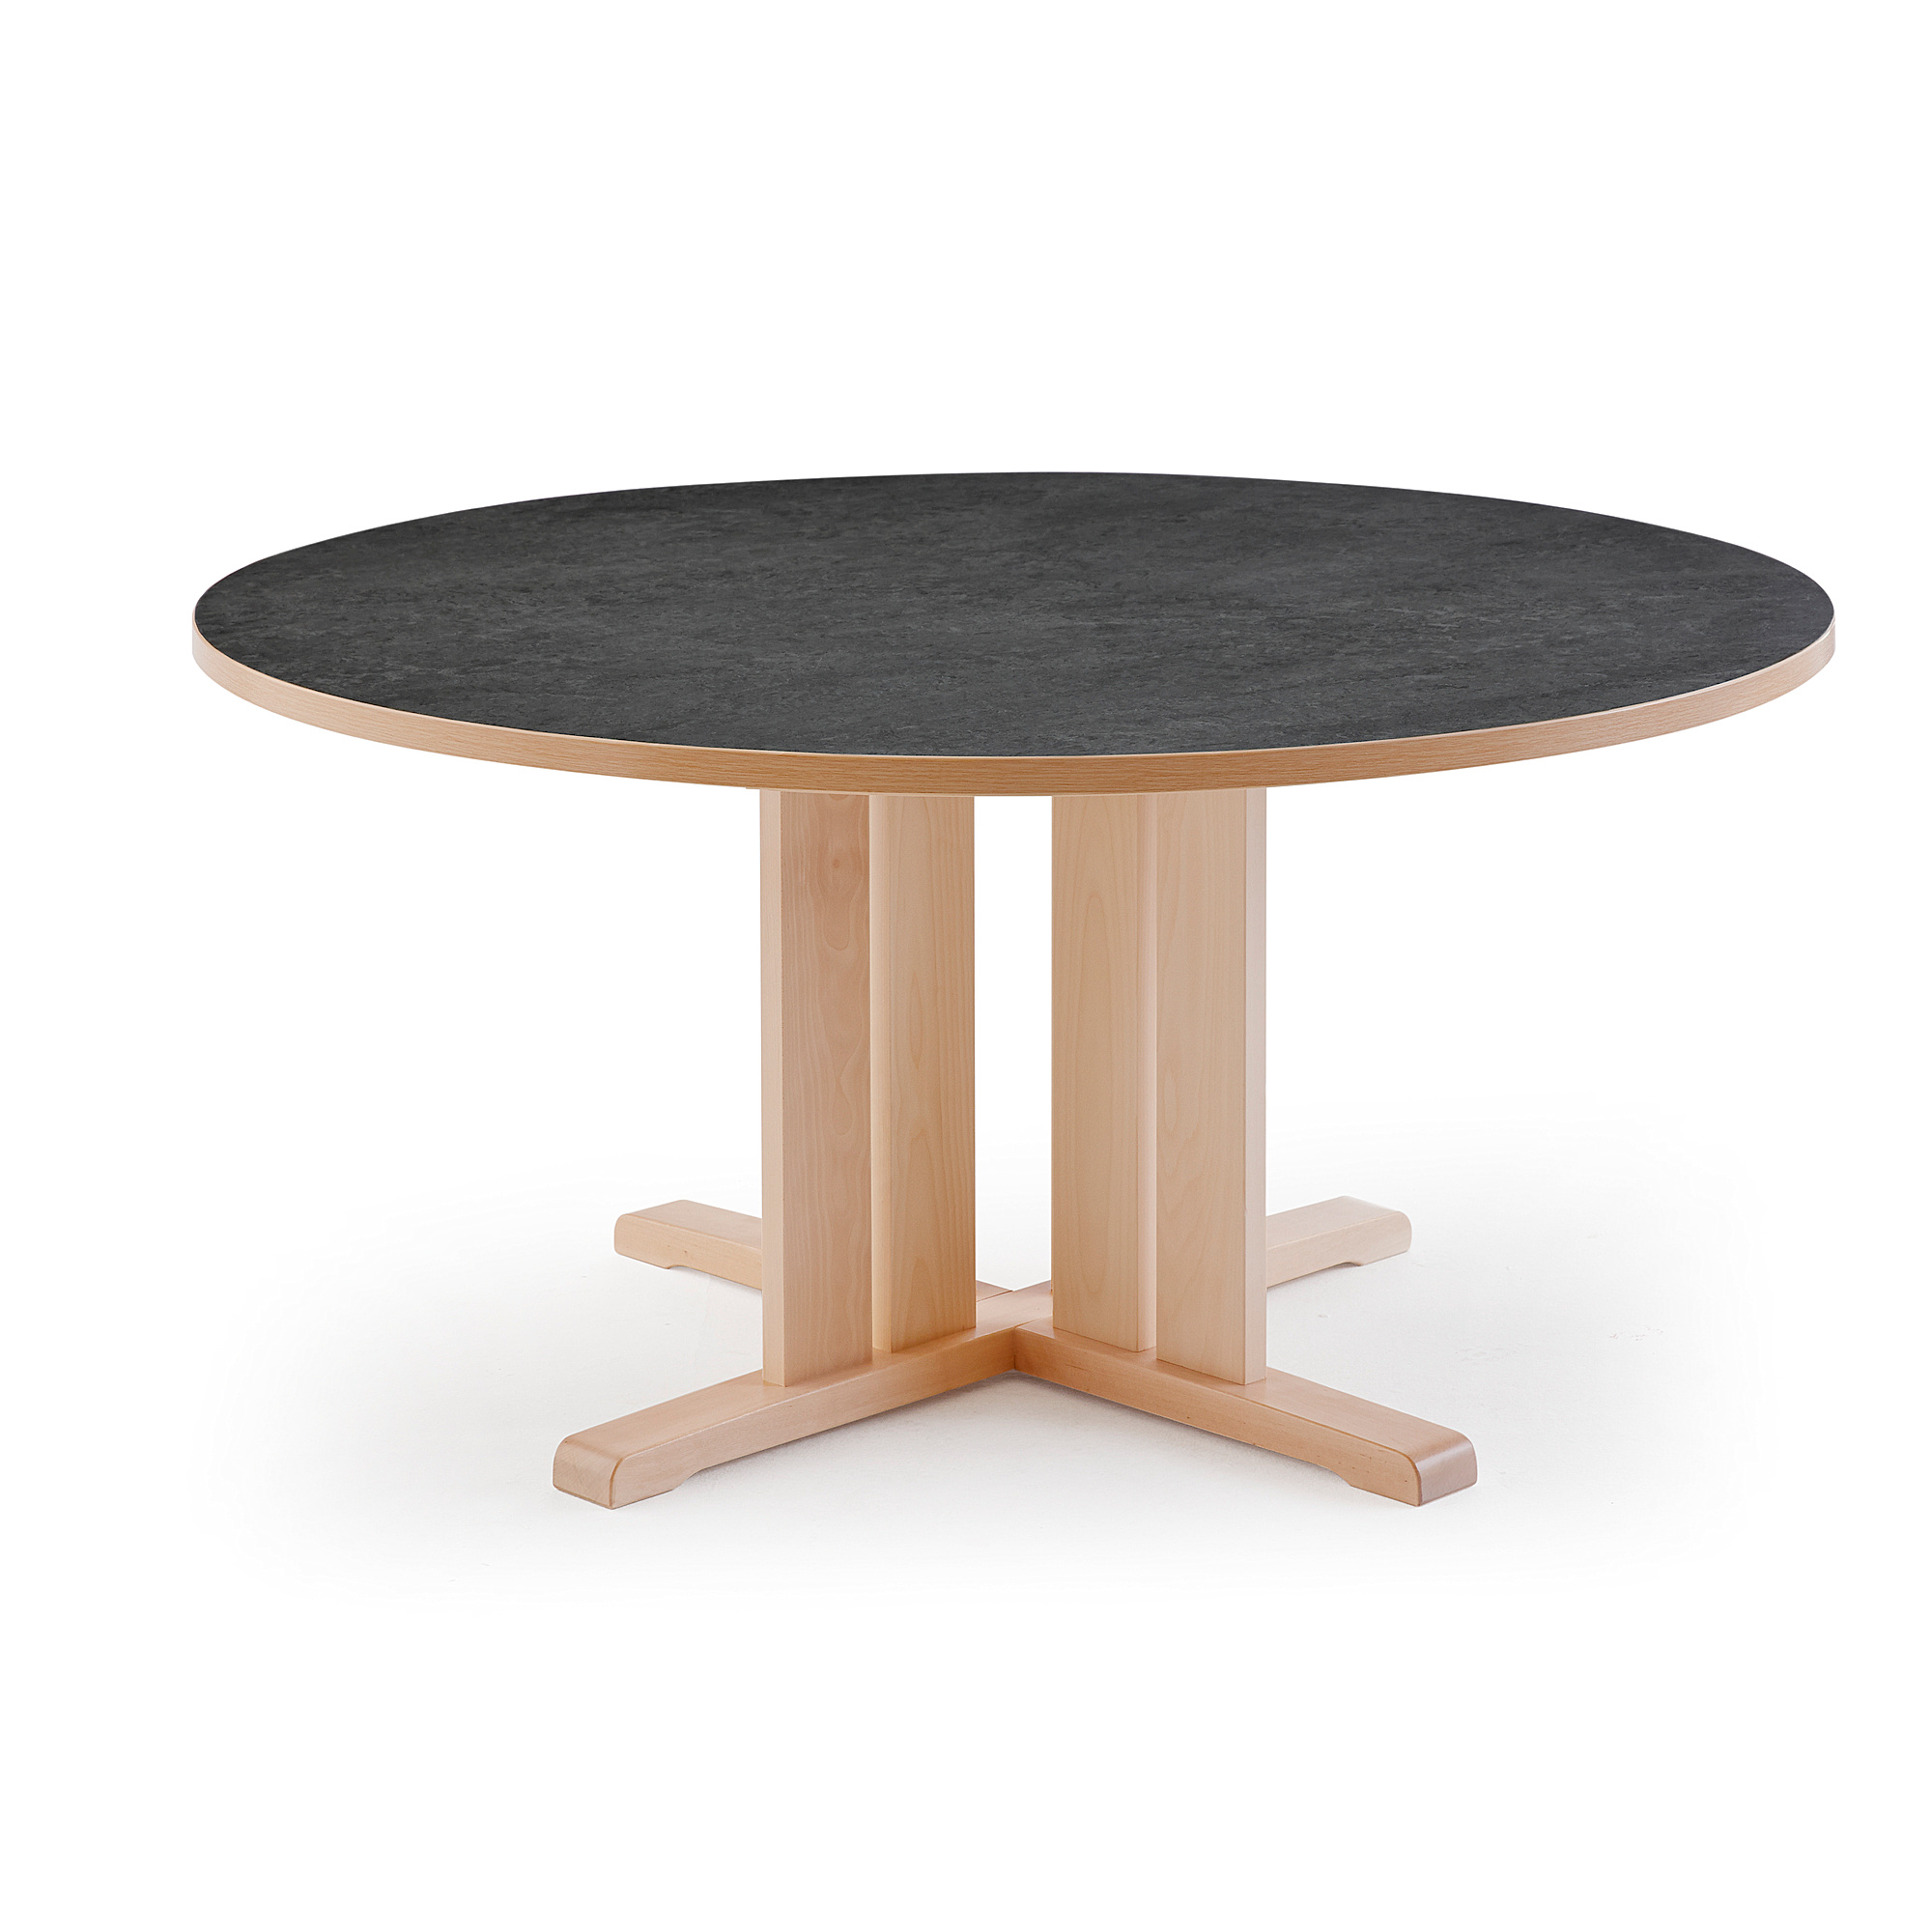 Stůl KUPOL, Ø1300x720 mm, akustické linoleum, bříza/tmavě šedá